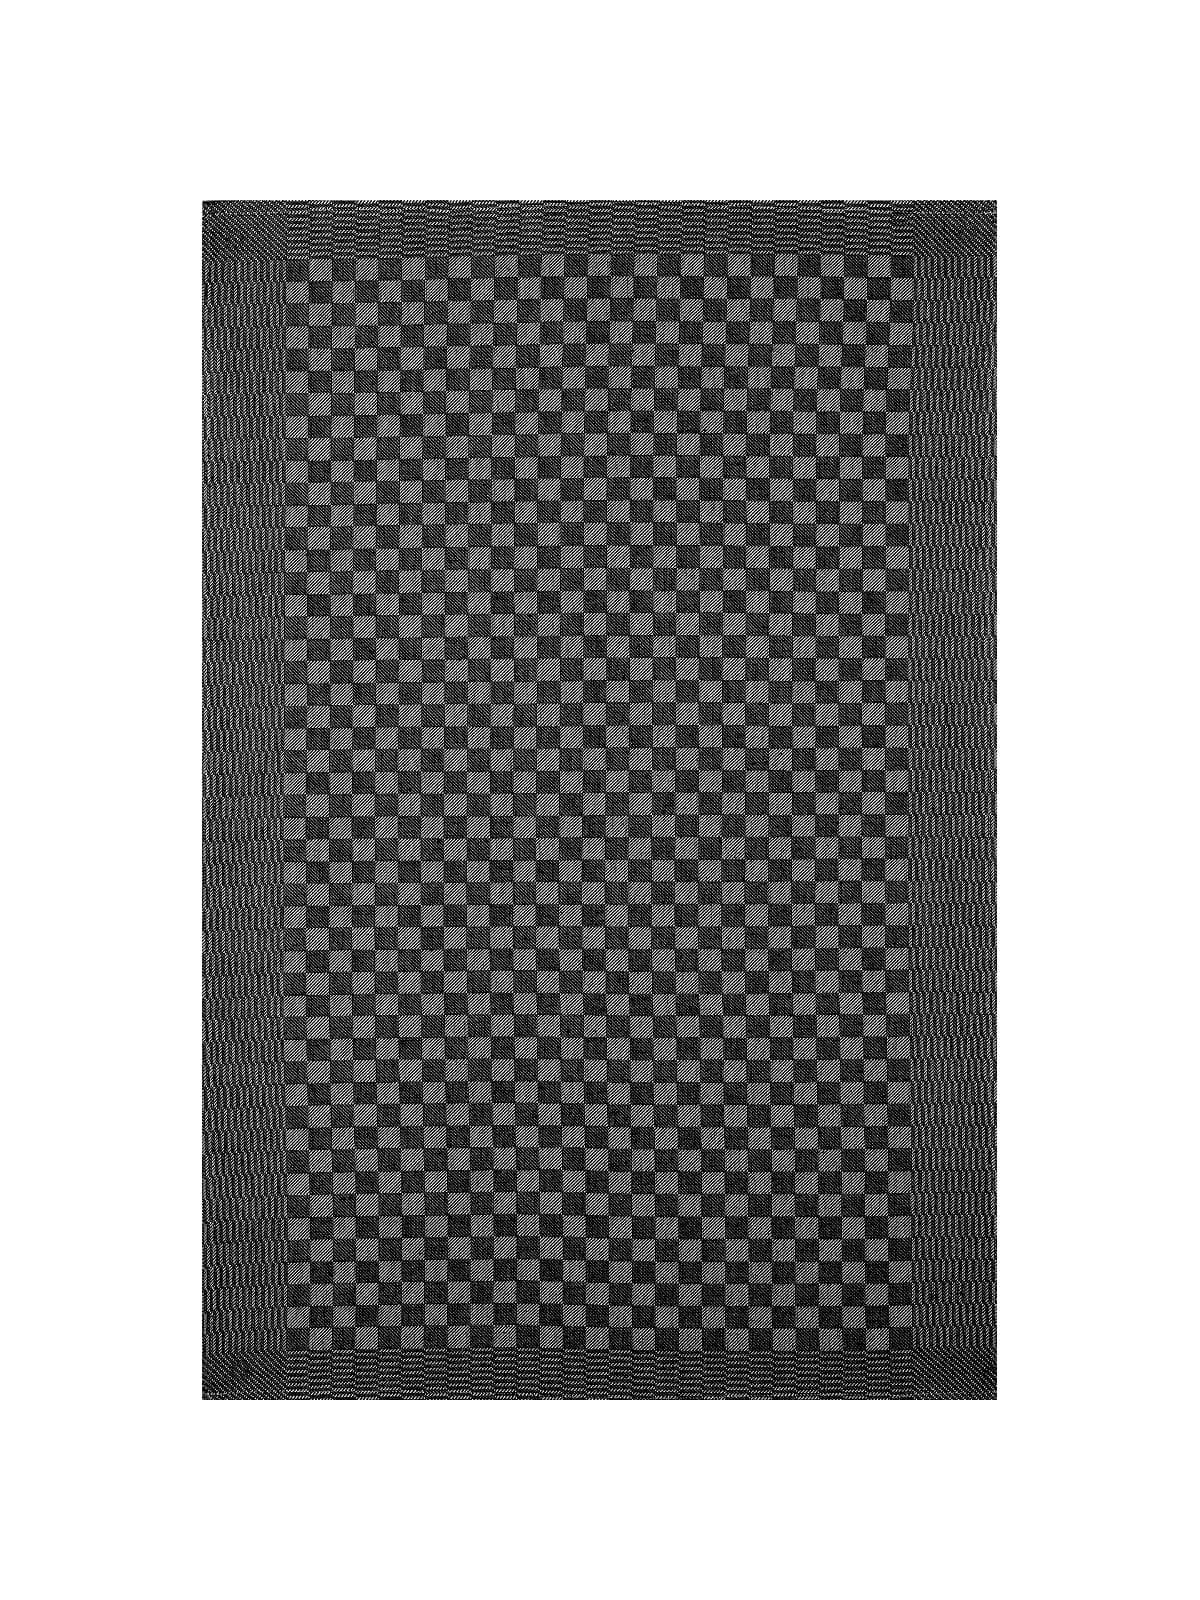 Pit Towel Black - 12 Pcs by Kitchen & Table Linens -  ChefsCotton